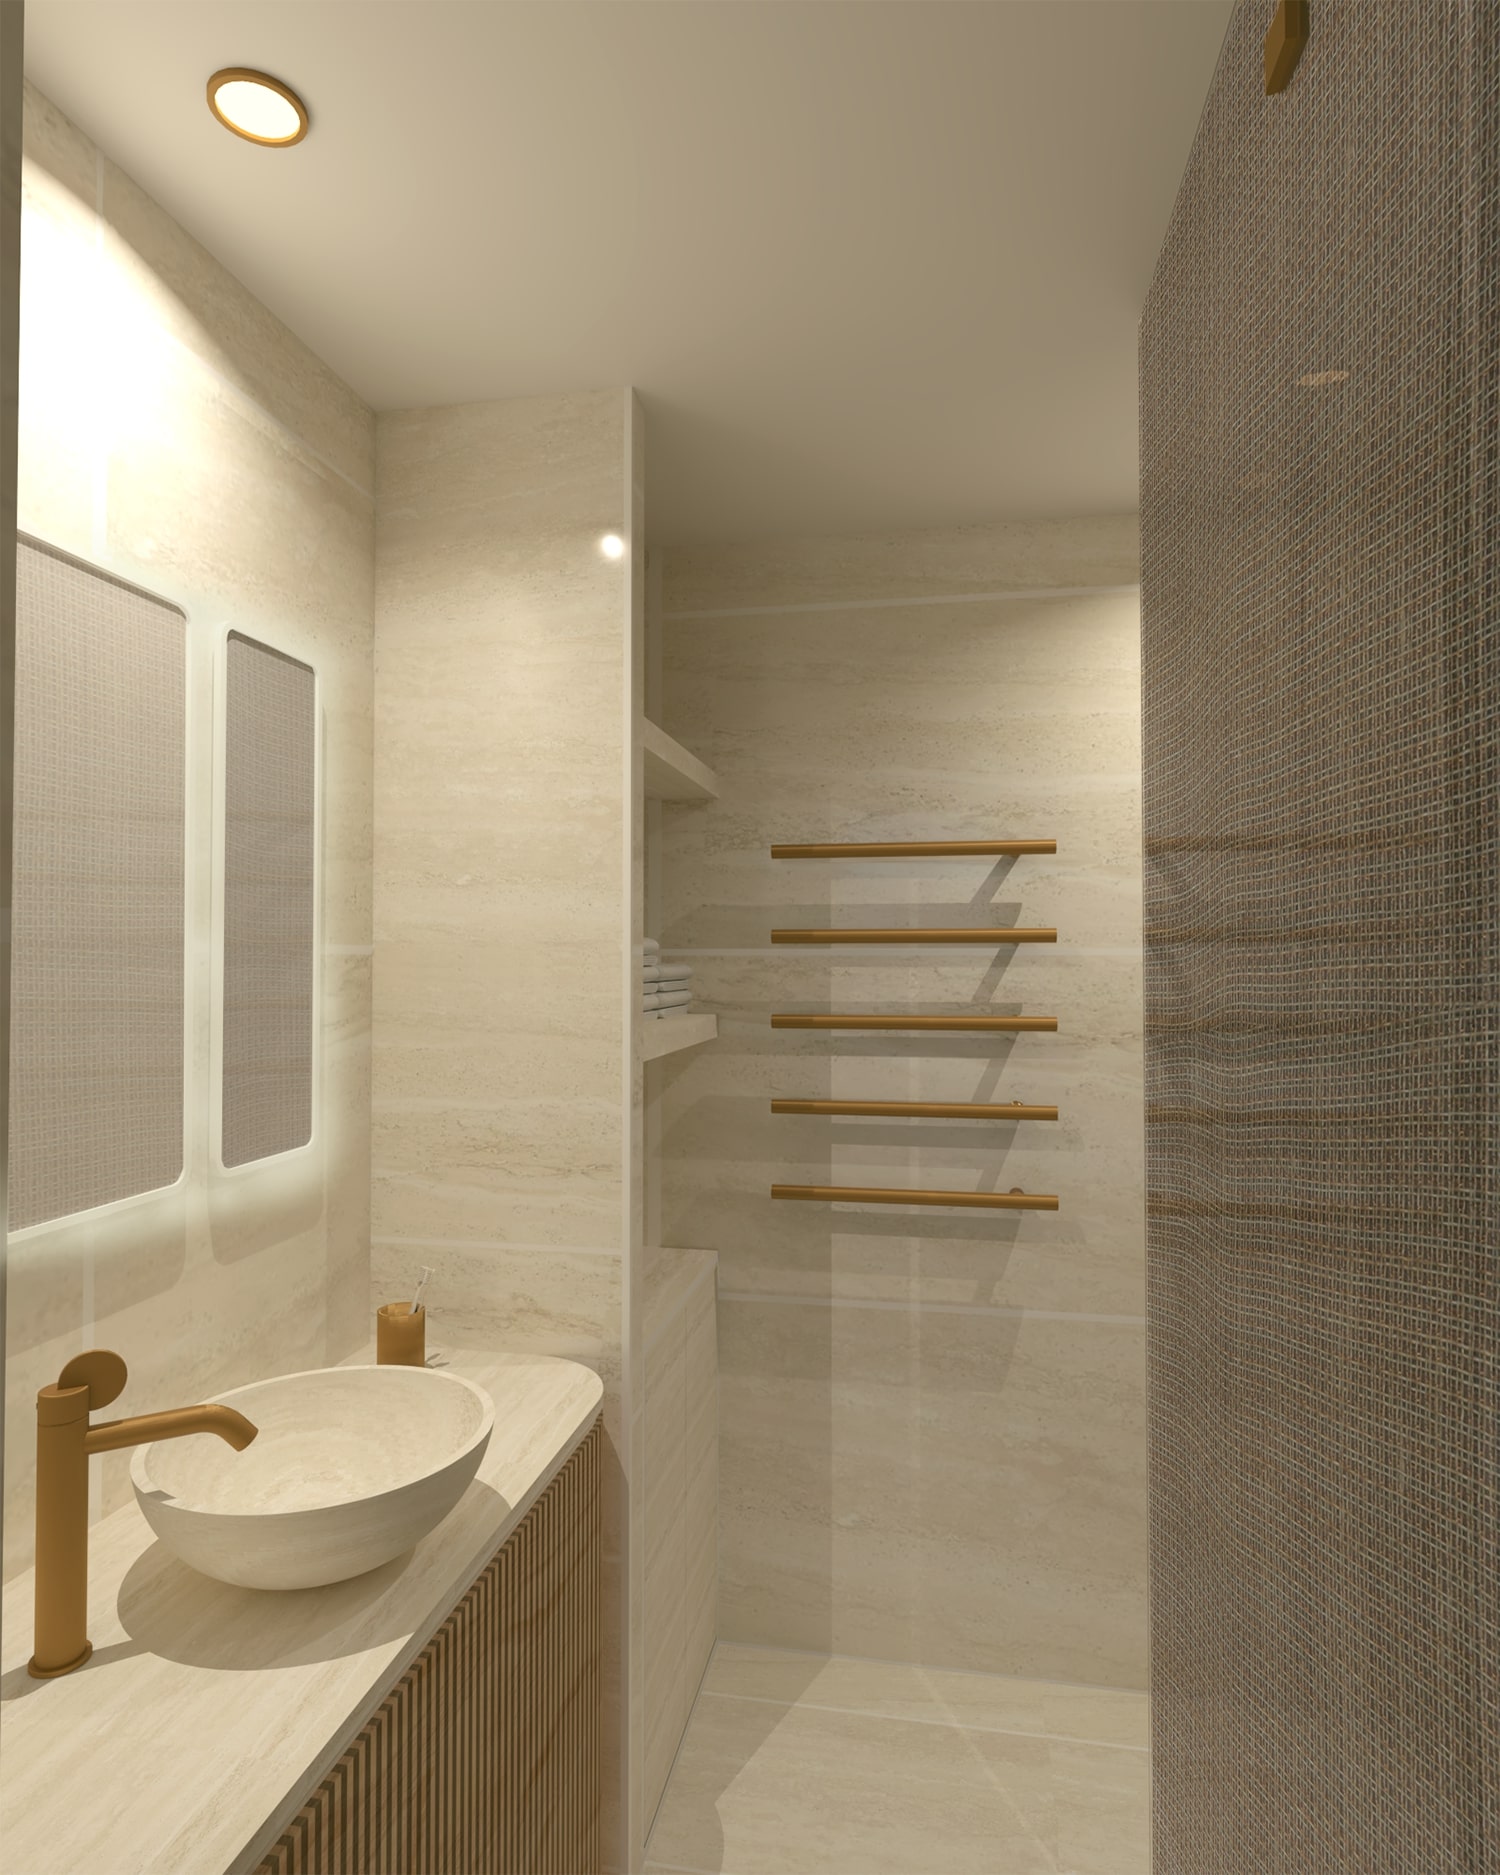 Première proposition de la modélisation 3D de la salle de bain d'amis du projet les abeilles sous une autre vue